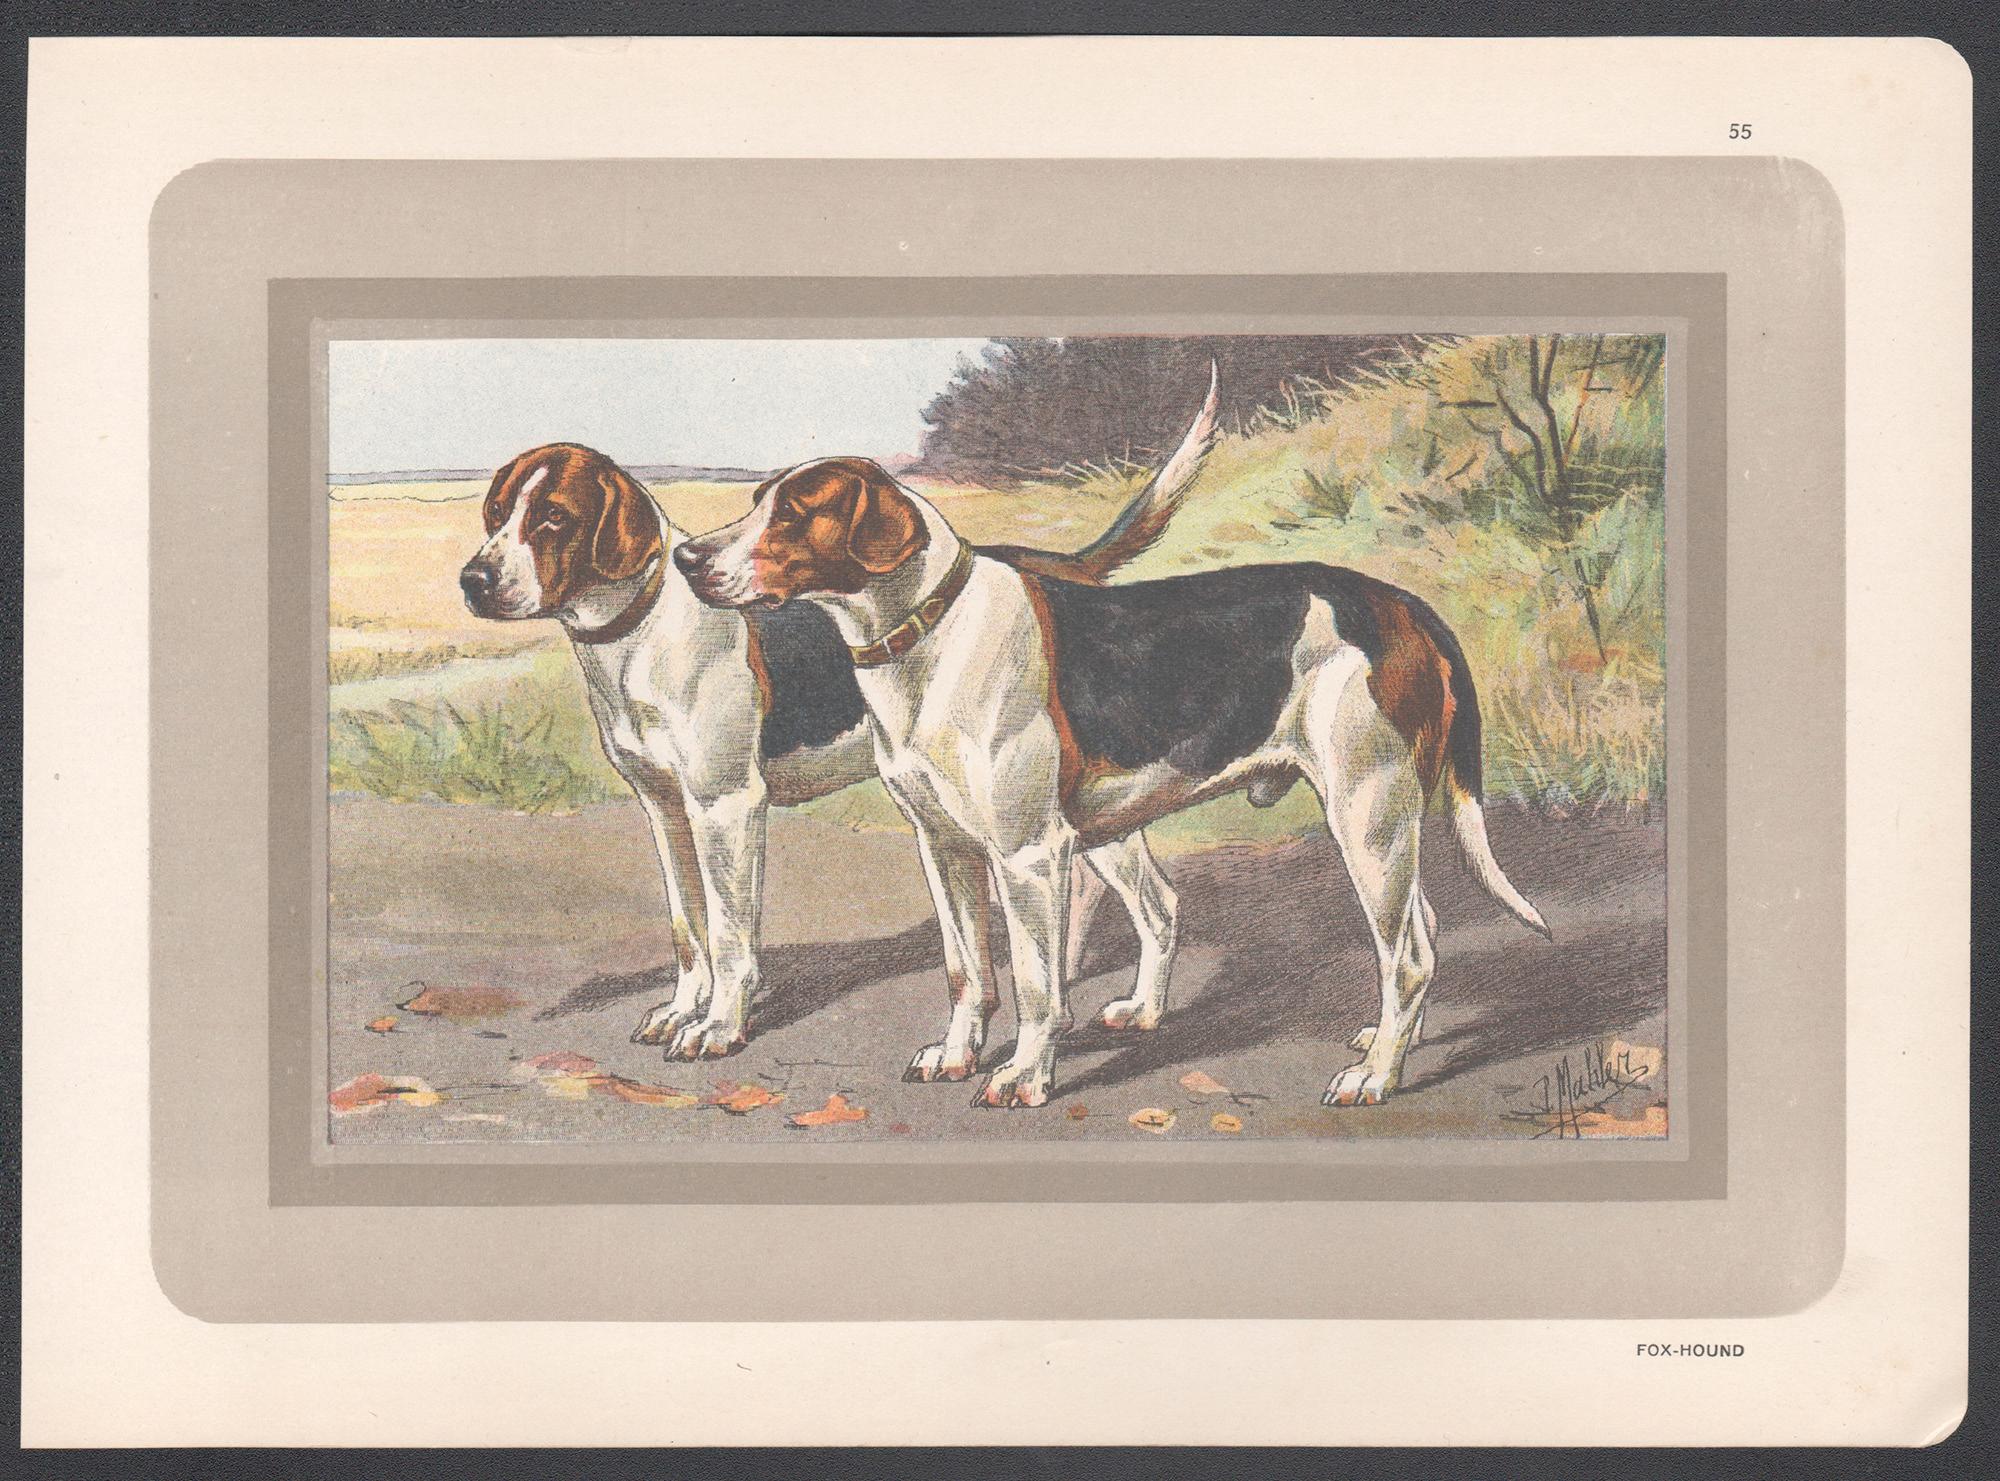 Fox Hound, Französischer Hundechromolithographie-Druck, 1931 – Print von P. Mahler